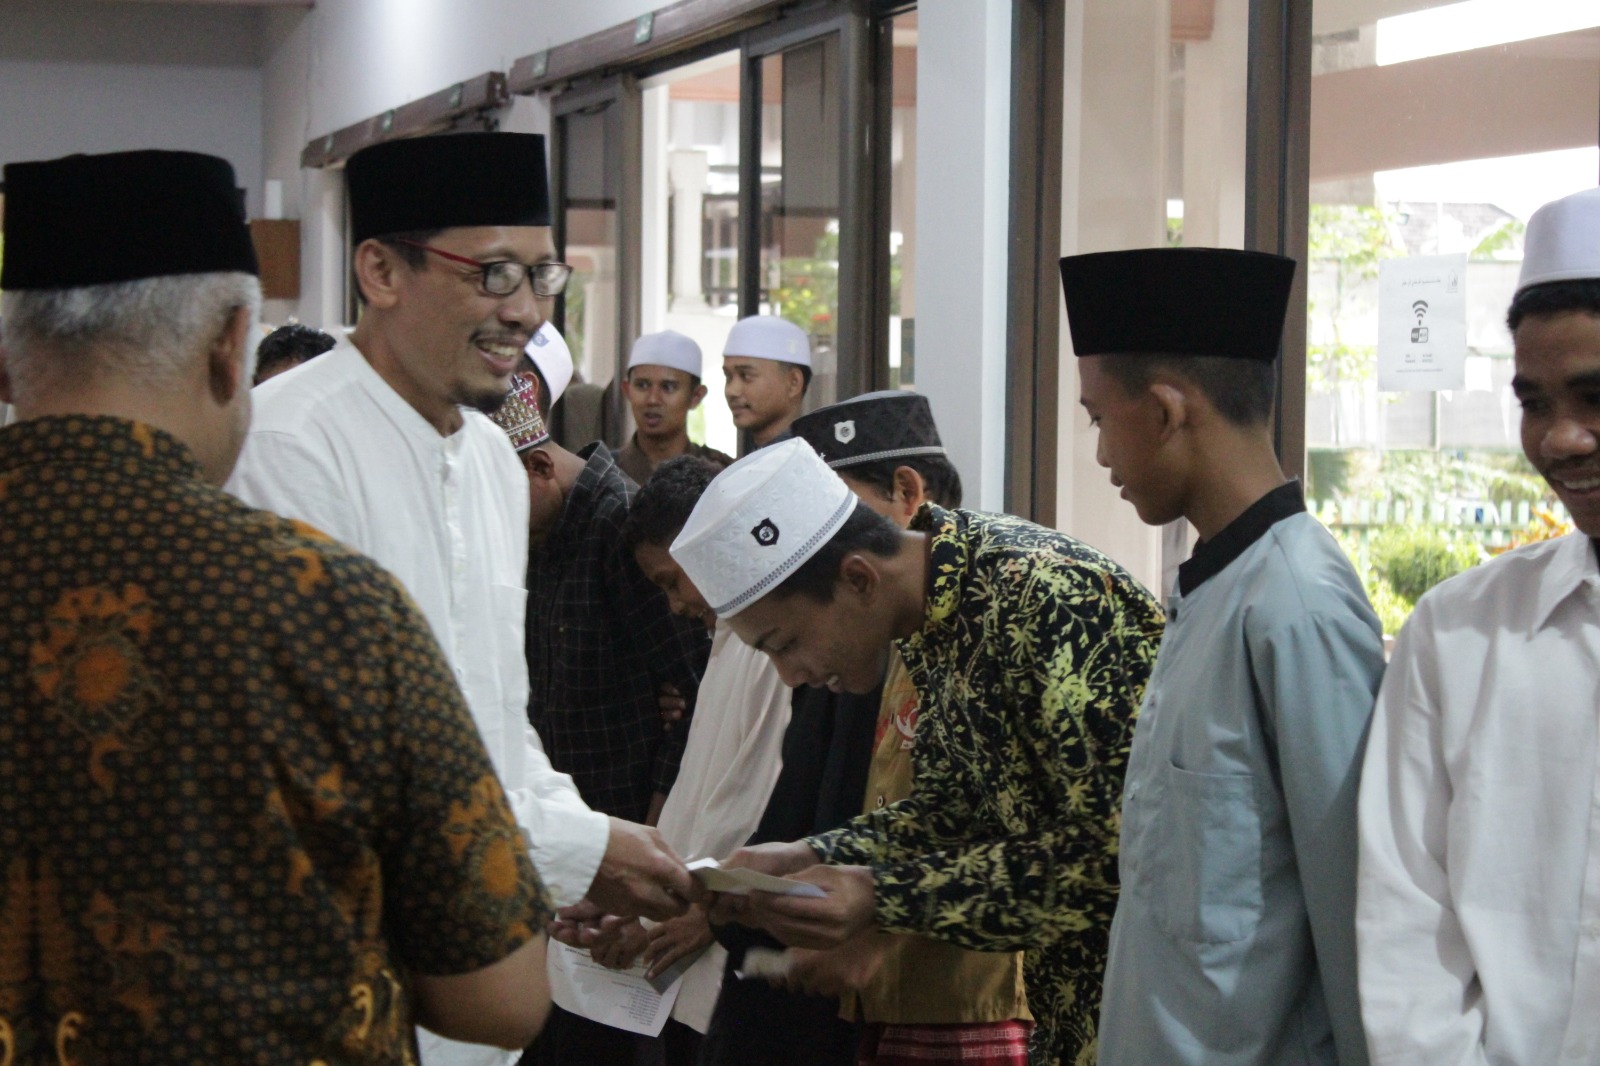 Buka Bersama dan Santunan Anak Yatim Meriah di Masjid Al Farabi Widyagama Malang